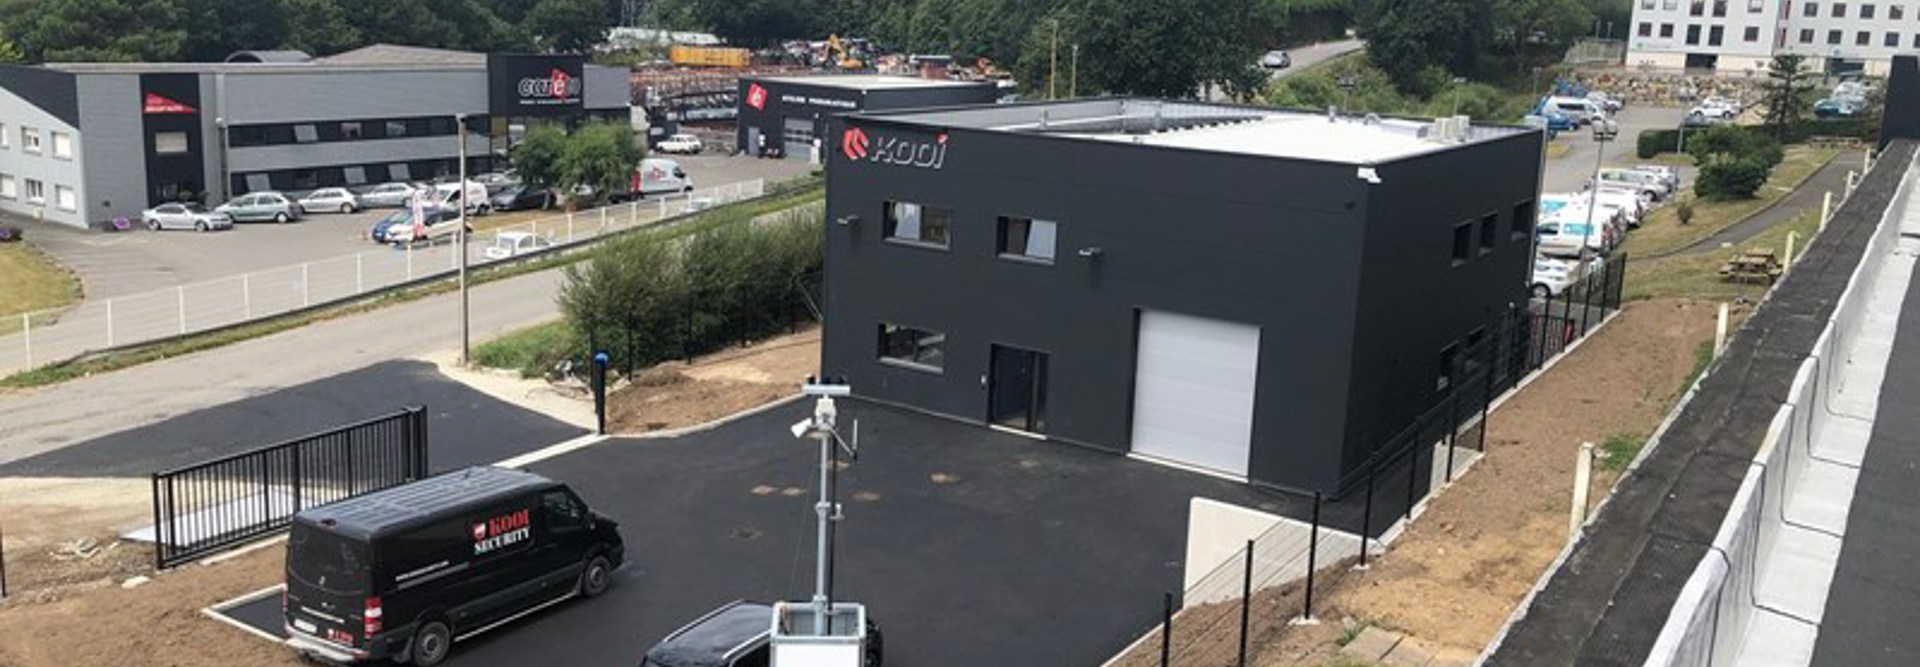 Kooi Opent Nieuwbouw Kantoor In Frankrijk